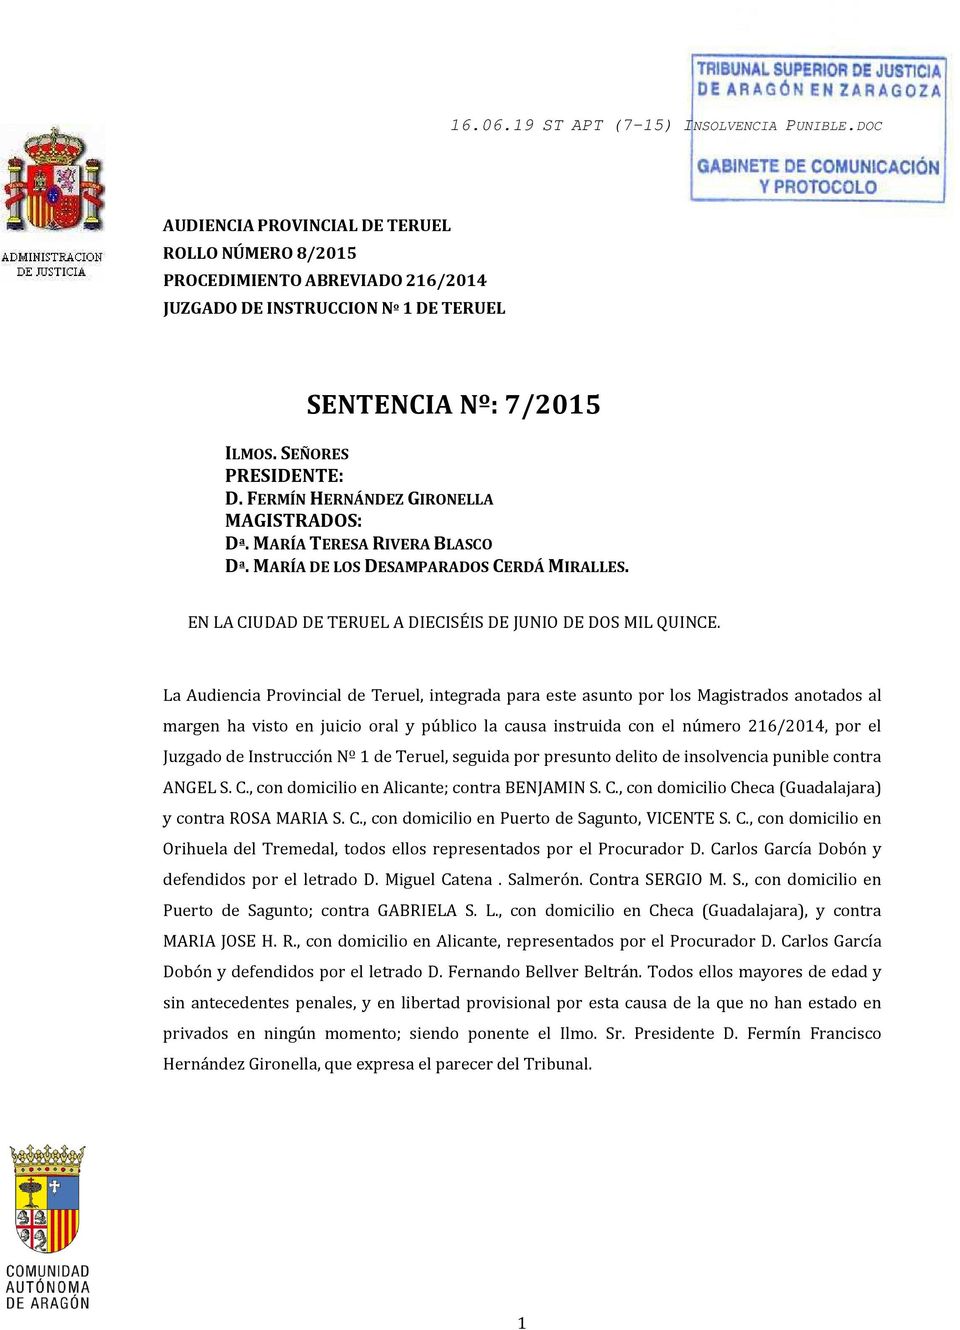 La Audiencia Provincial de Teruel, integrada para este asunto por los Magistrados anotados al margen ha visto en juicio oral y público la causa instruida con el número 216/2014, por el Juzgado de